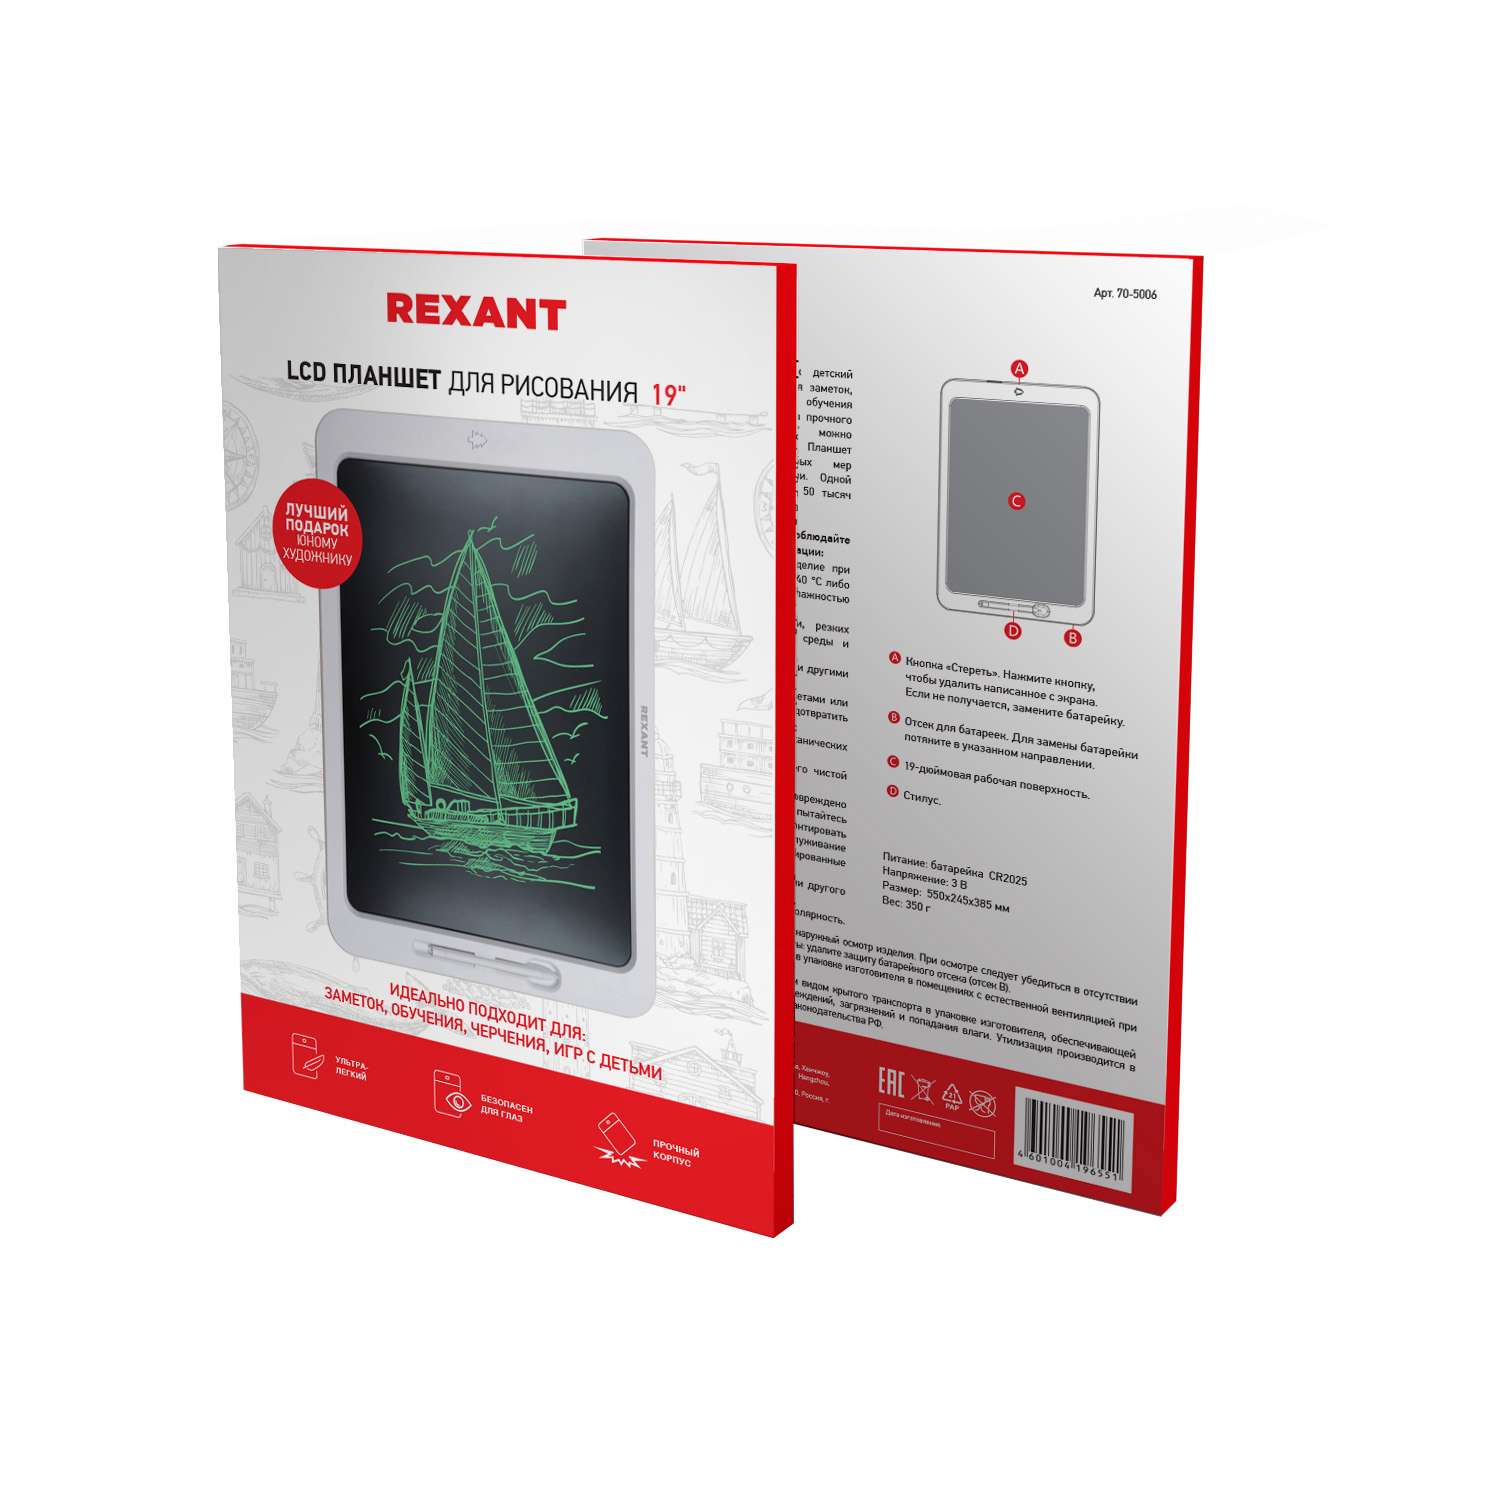 Электронный планшет REXANT для рисования 19 дюймов - фото 5